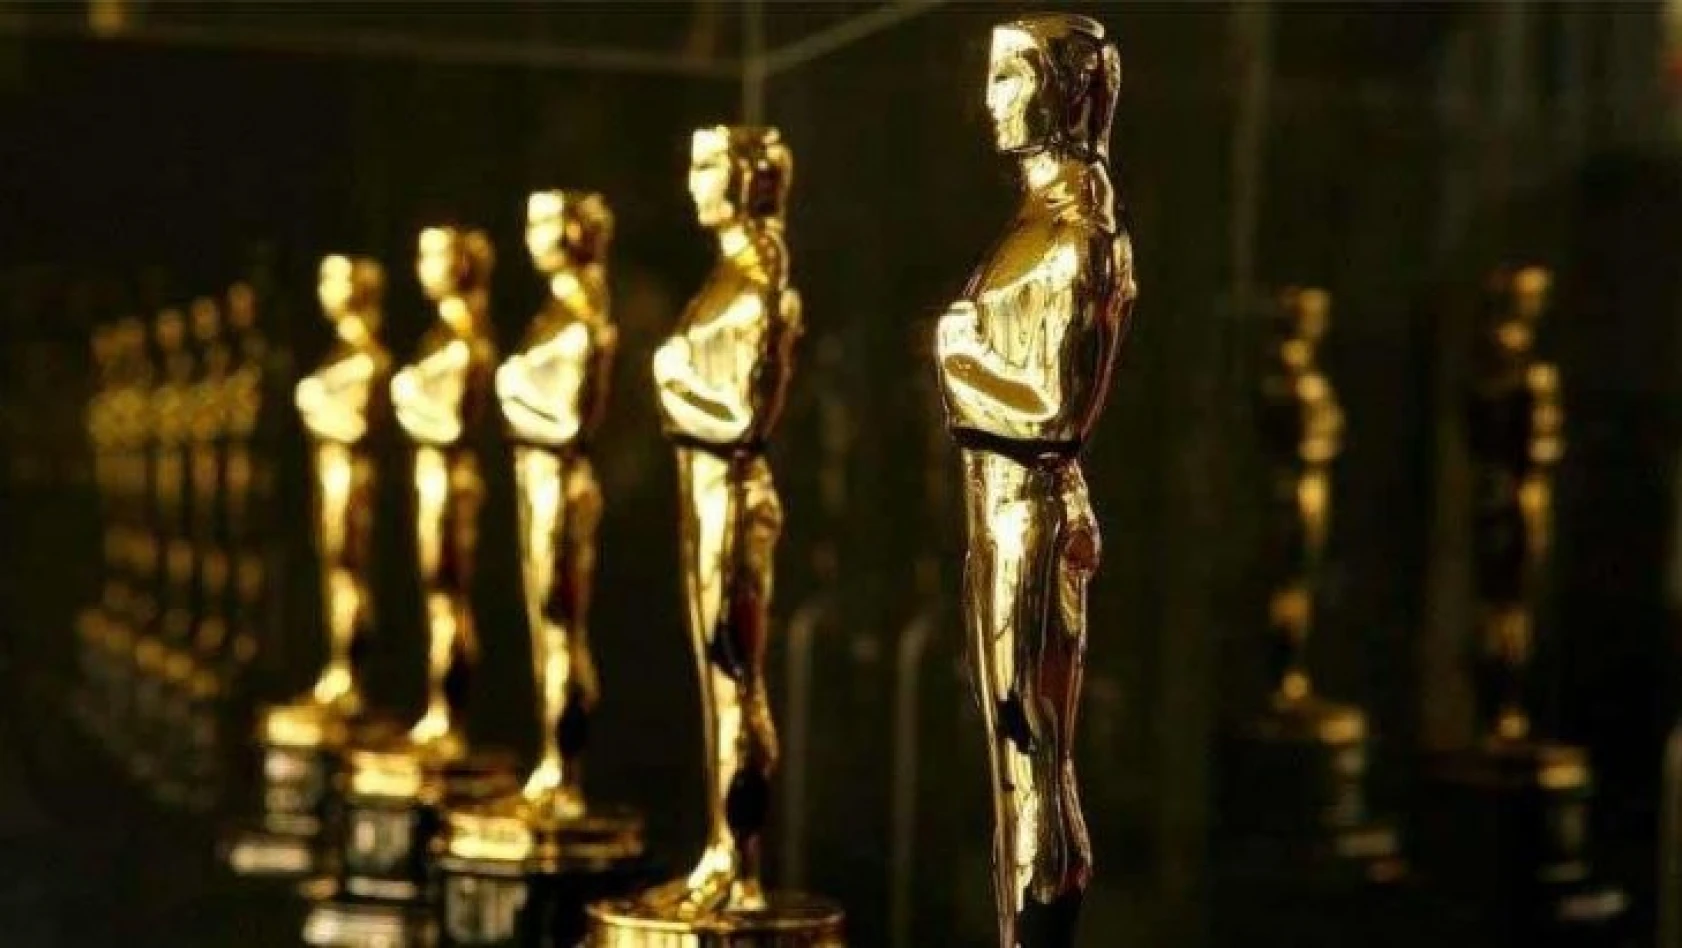 Oscar Ödül Töreni yıl da sunucusuz olacak